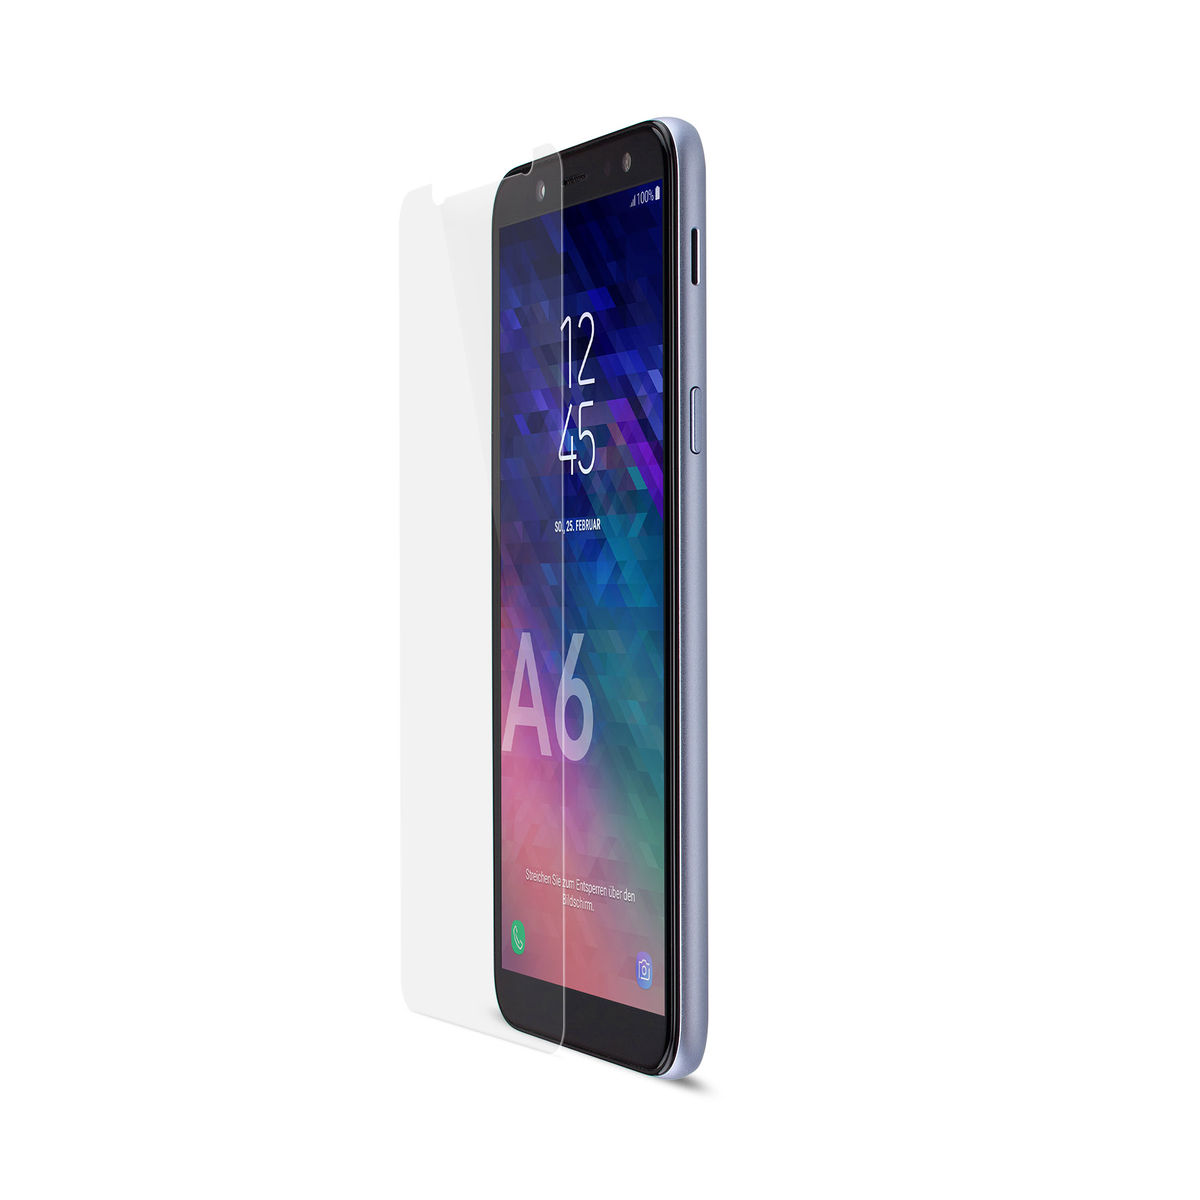 (2018)) Galaxy A6 SecondDisplay Displayschutz(für ARTWIZZ Samsung